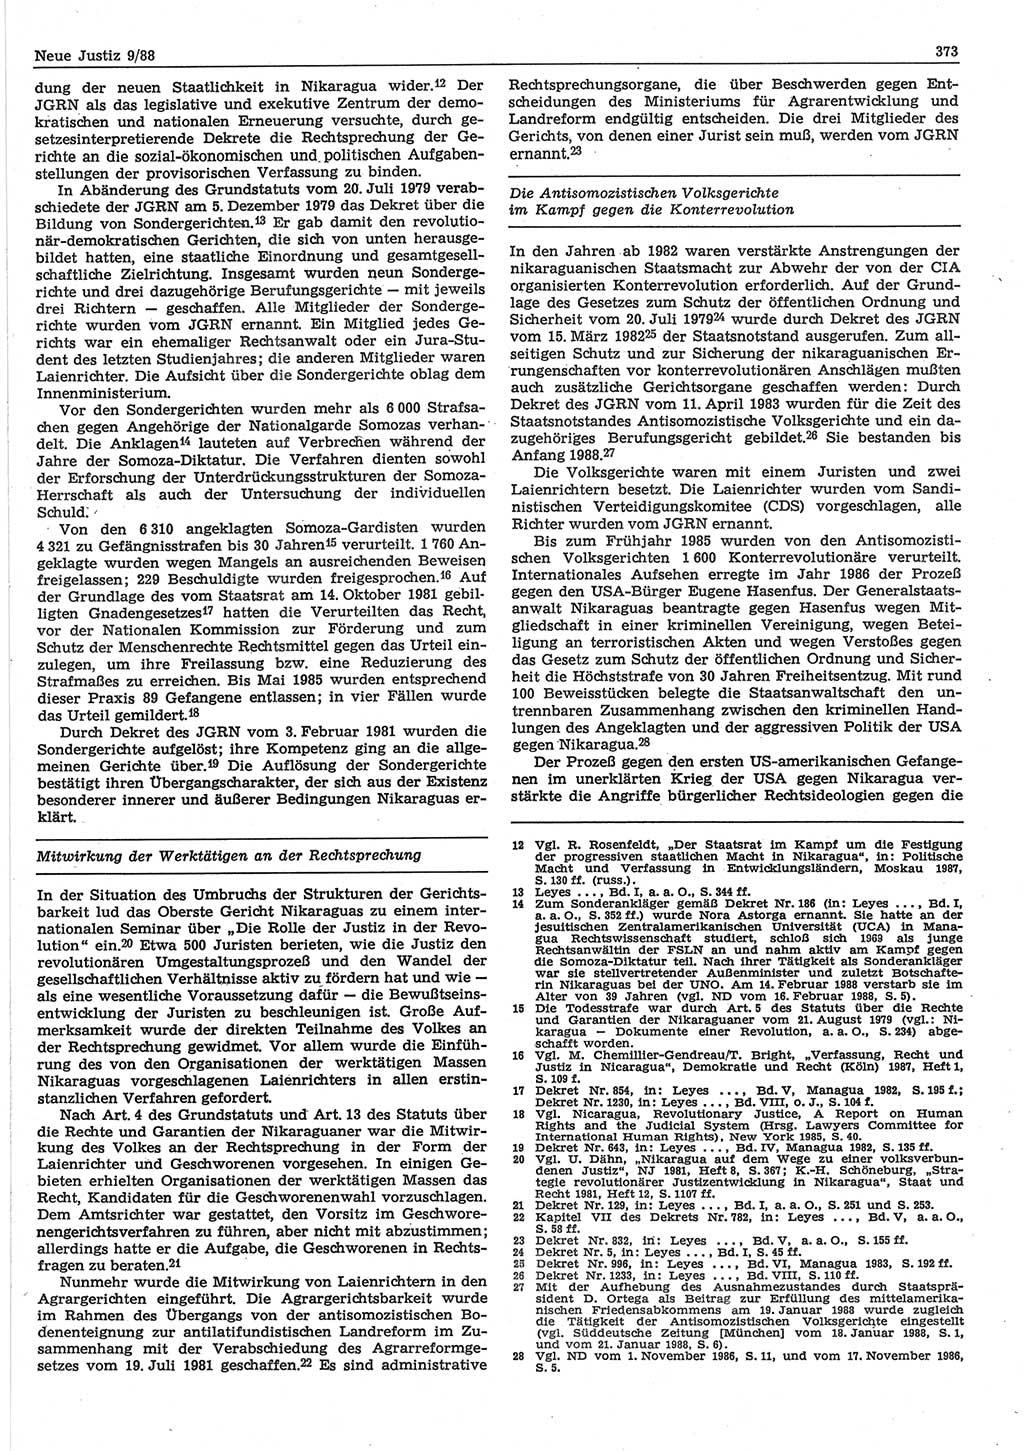 Neue Justiz (NJ), Zeitschrift für sozialistisches Recht und Gesetzlichkeit [Deutsche Demokratische Republik (DDR)], 42. Jahrgang 1988, Seite 373 (NJ DDR 1988, S. 373)